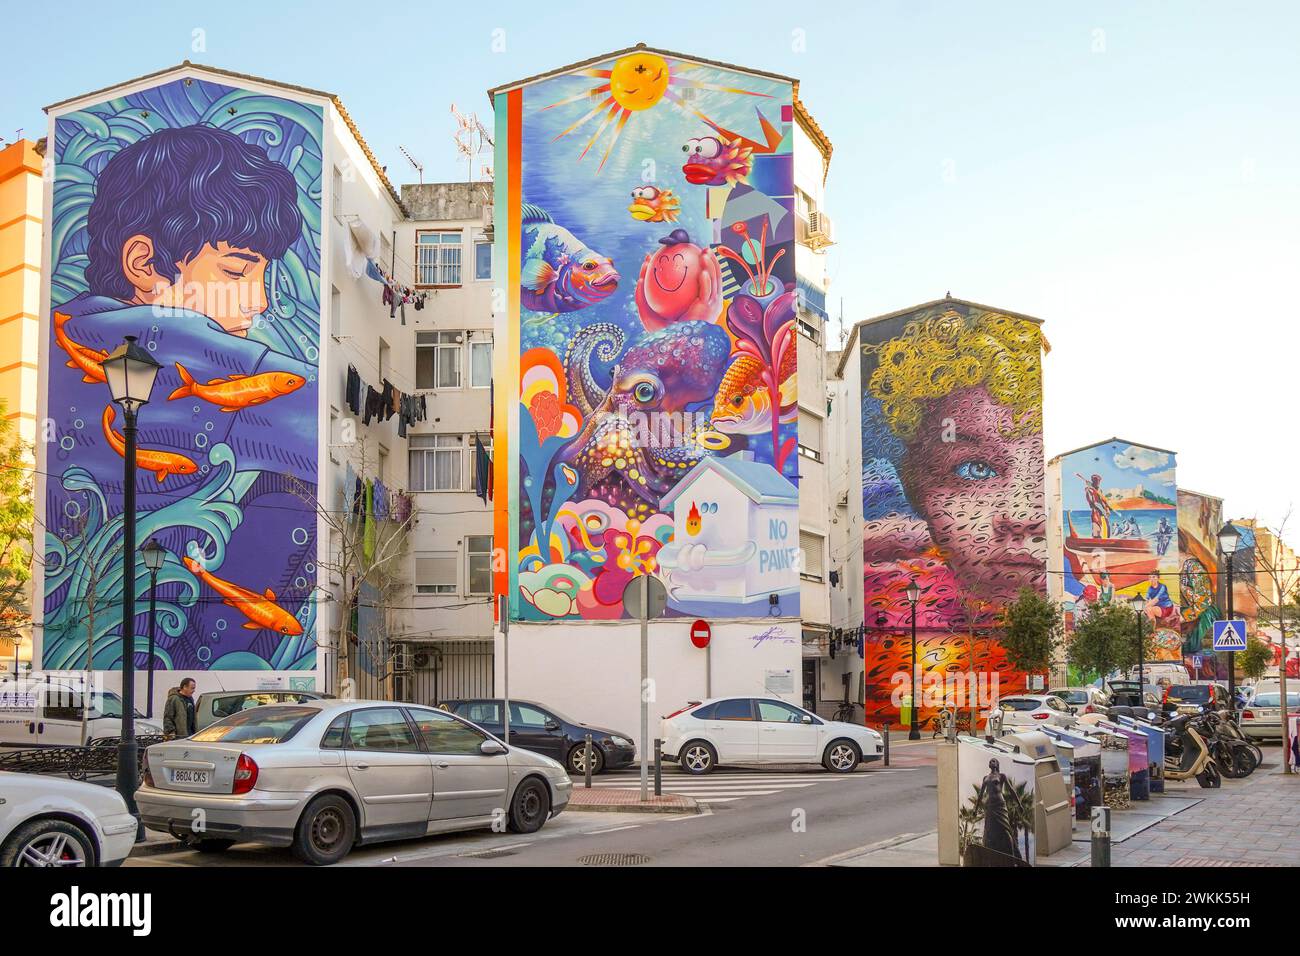 Peintures murales sur les façades de la zone urbaine résidentielle à Fuengirola, Costa del sol, Andalousie, Espagne. Banque D'Images